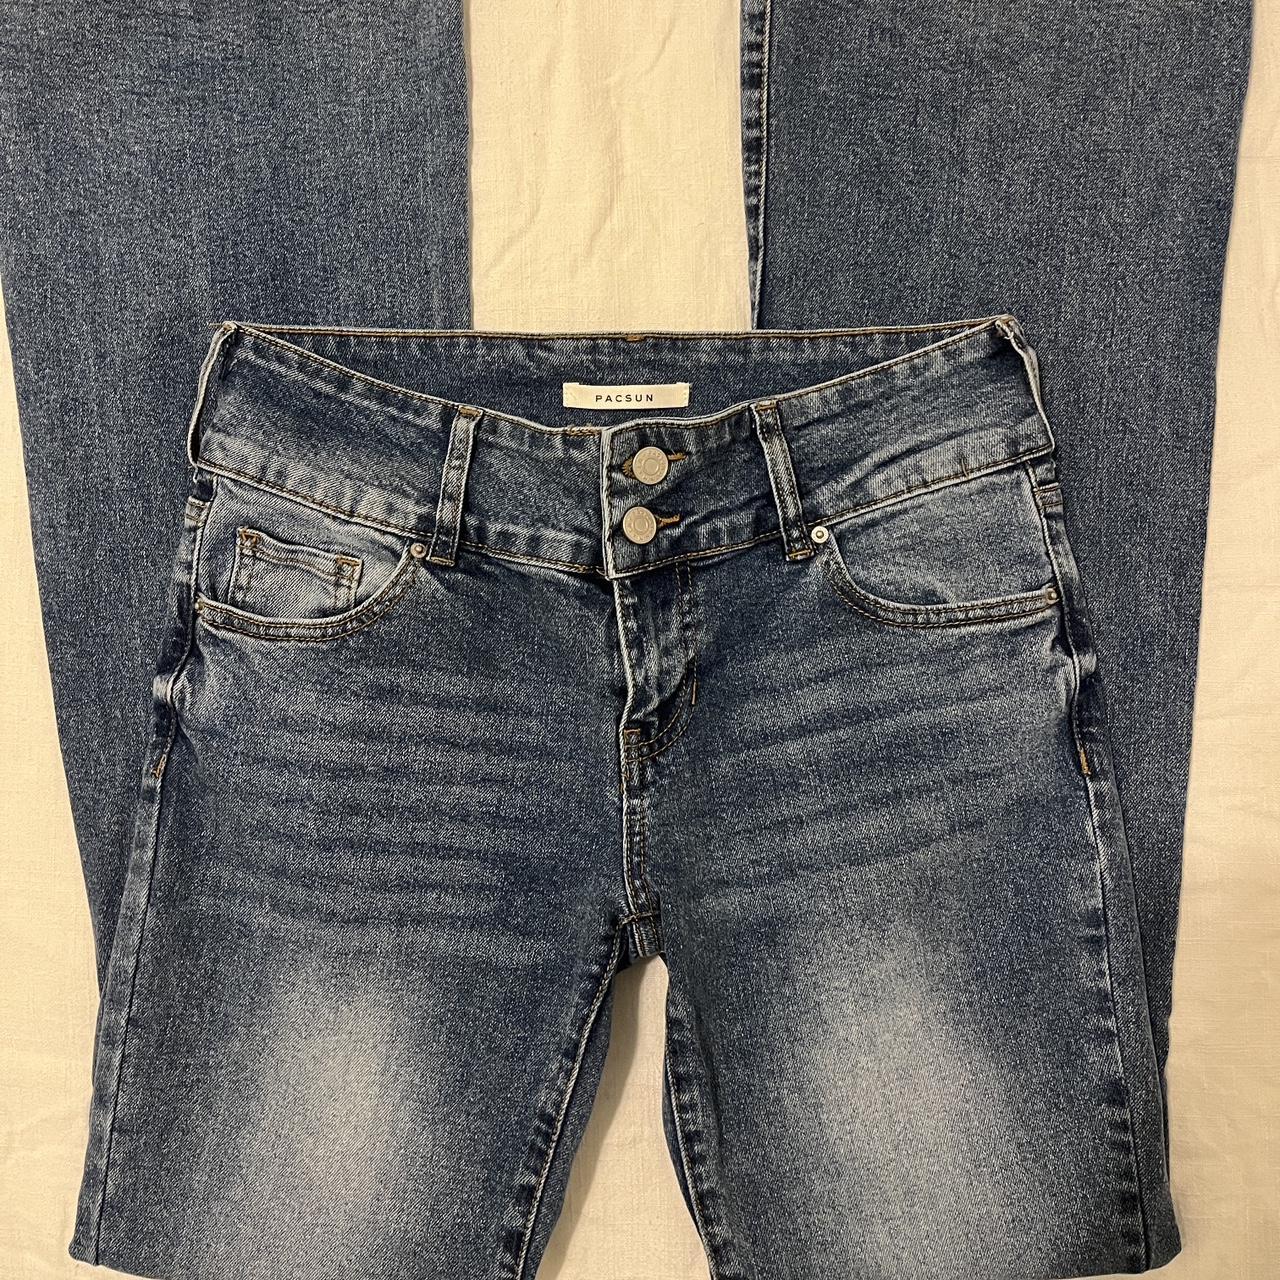 size 27” pacsun low rise bootcut jeans ⭐️ ++ has cute... - Depop